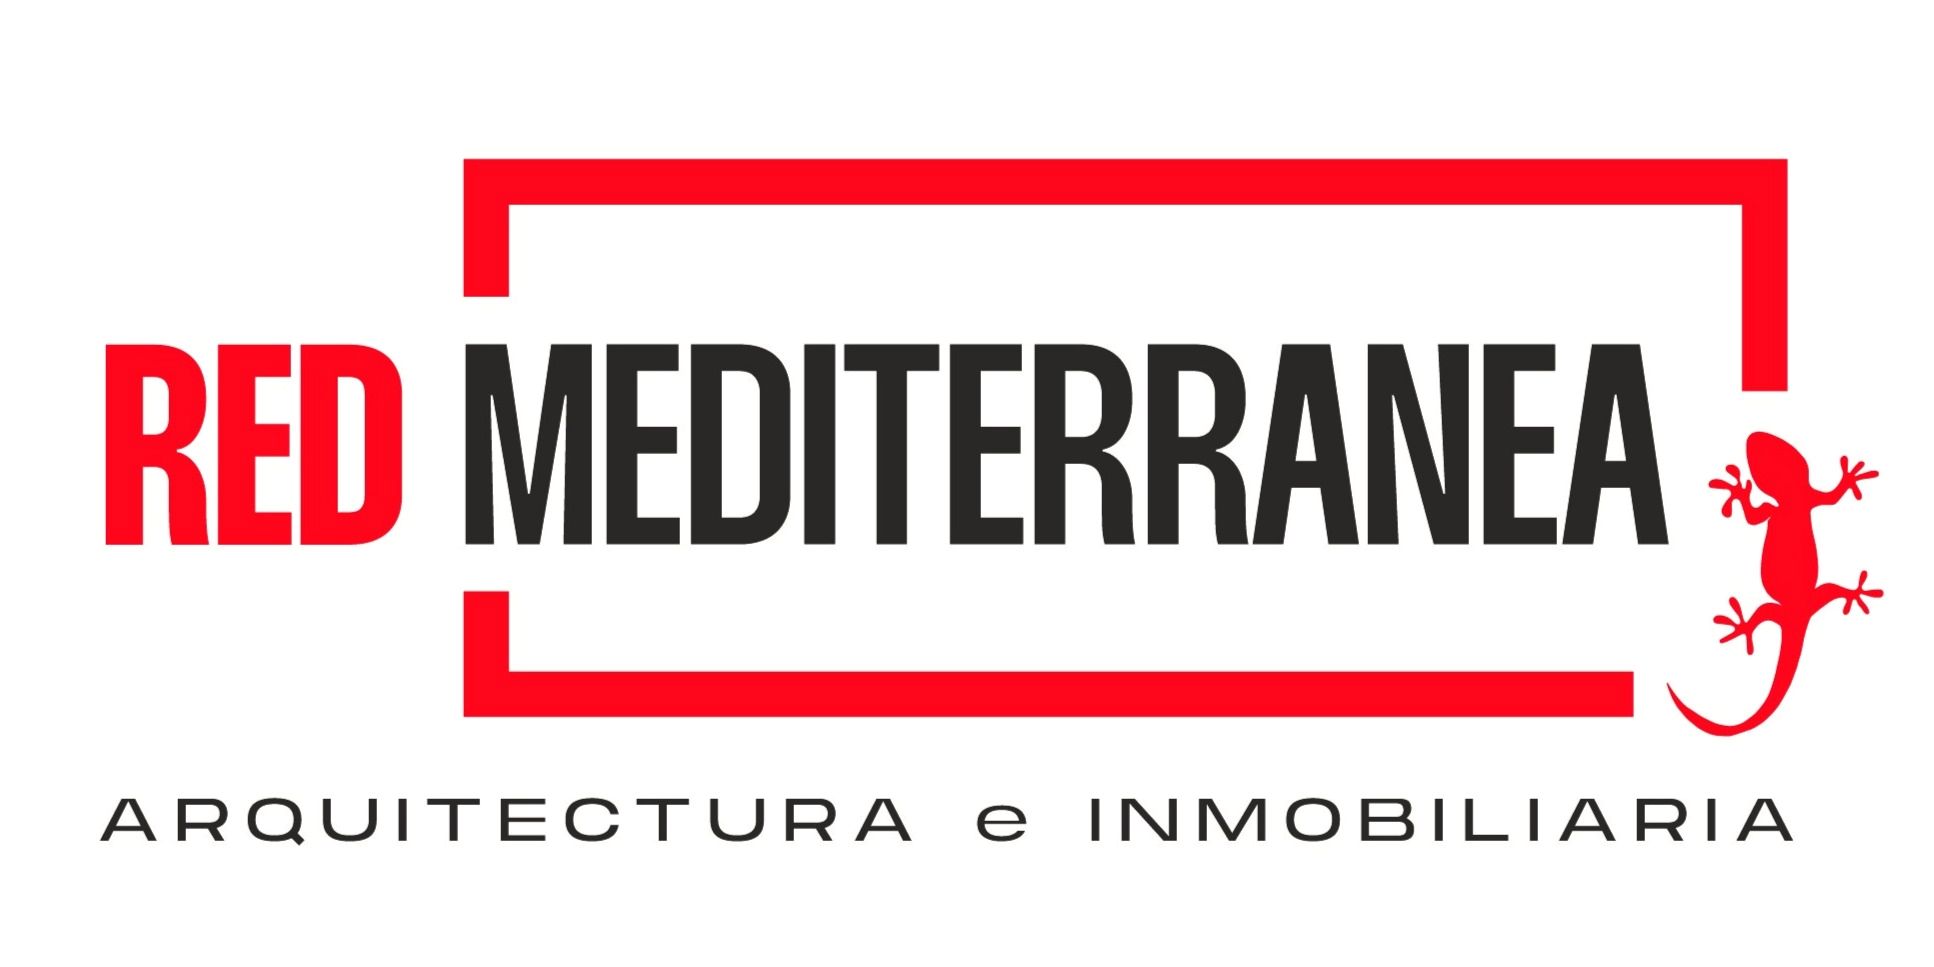 Red Mediterranea